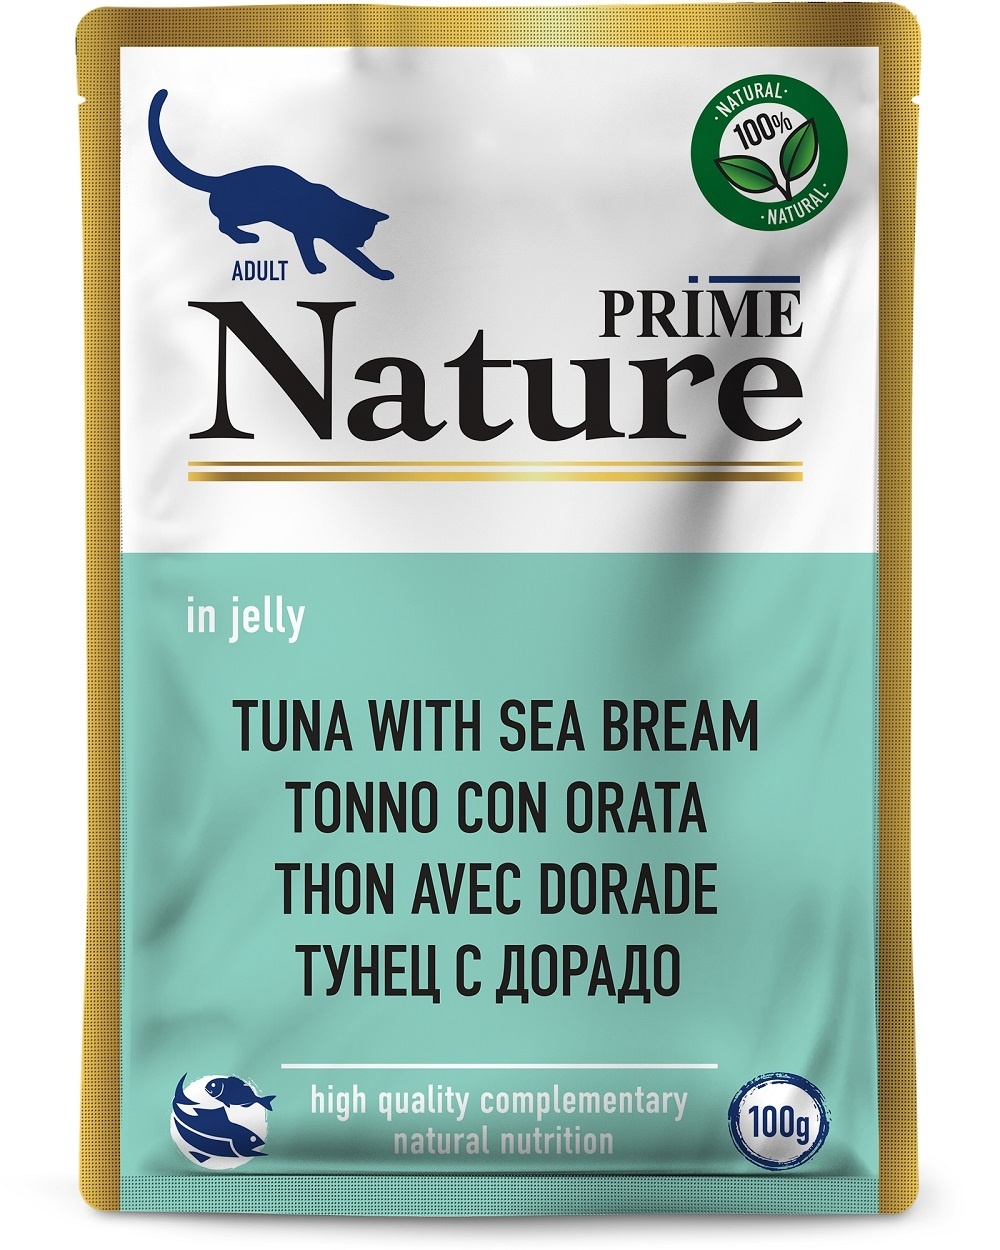 Prime Nature паучи для кошек: тунец с дорадо в желе (100 г) Prime Nature паучи для кошек: тунец с дорадо в желе (100 г) - фото 1